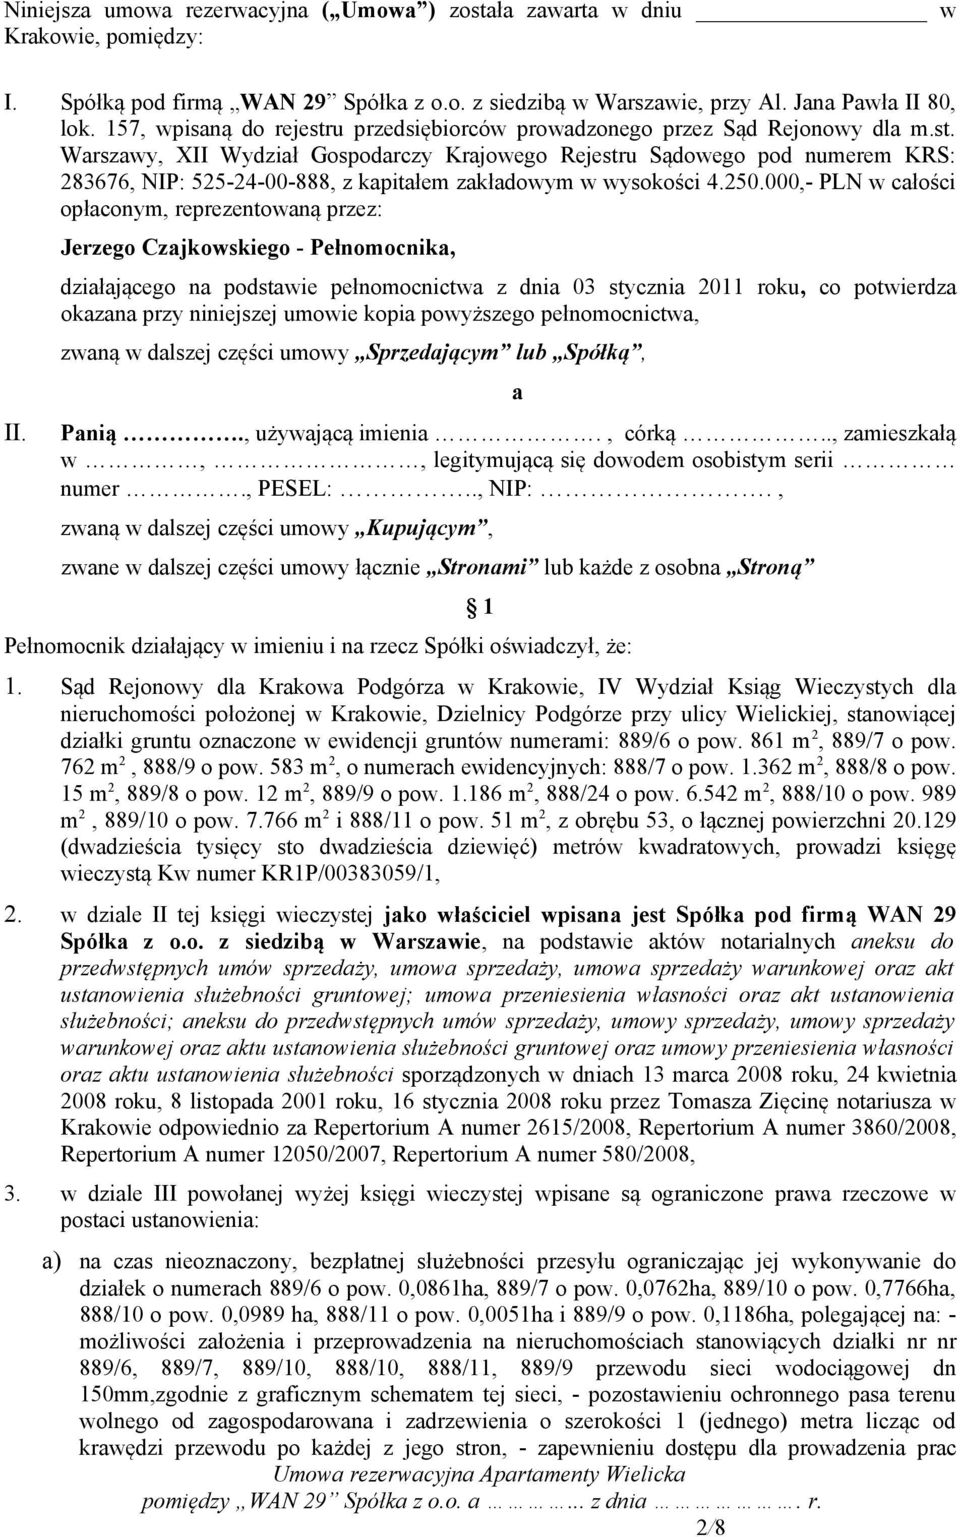 250.000,- PLN w całości opłaconym, reprezentowaną przez: Jerzego Czajkowskiego - Pełnomocnika, działającego na podstawie pełnomocnictwa z dnia 03 stycznia 2011 roku, co potwierdza okazana przy